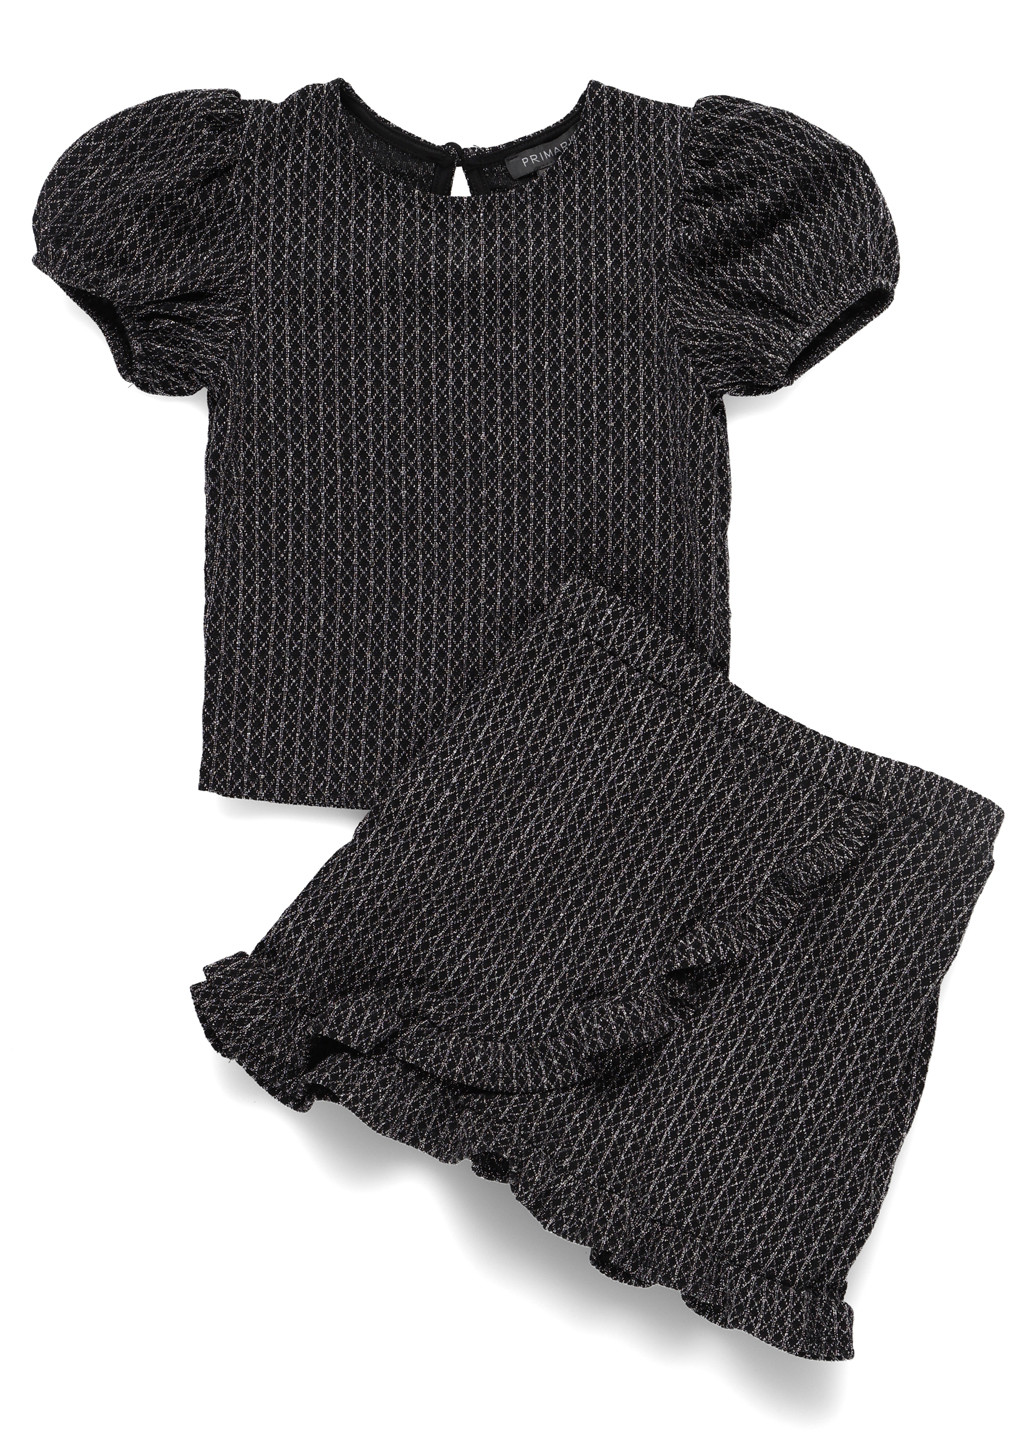 Черный демисезонный костюм (блуза, юбка) юбочный Primark